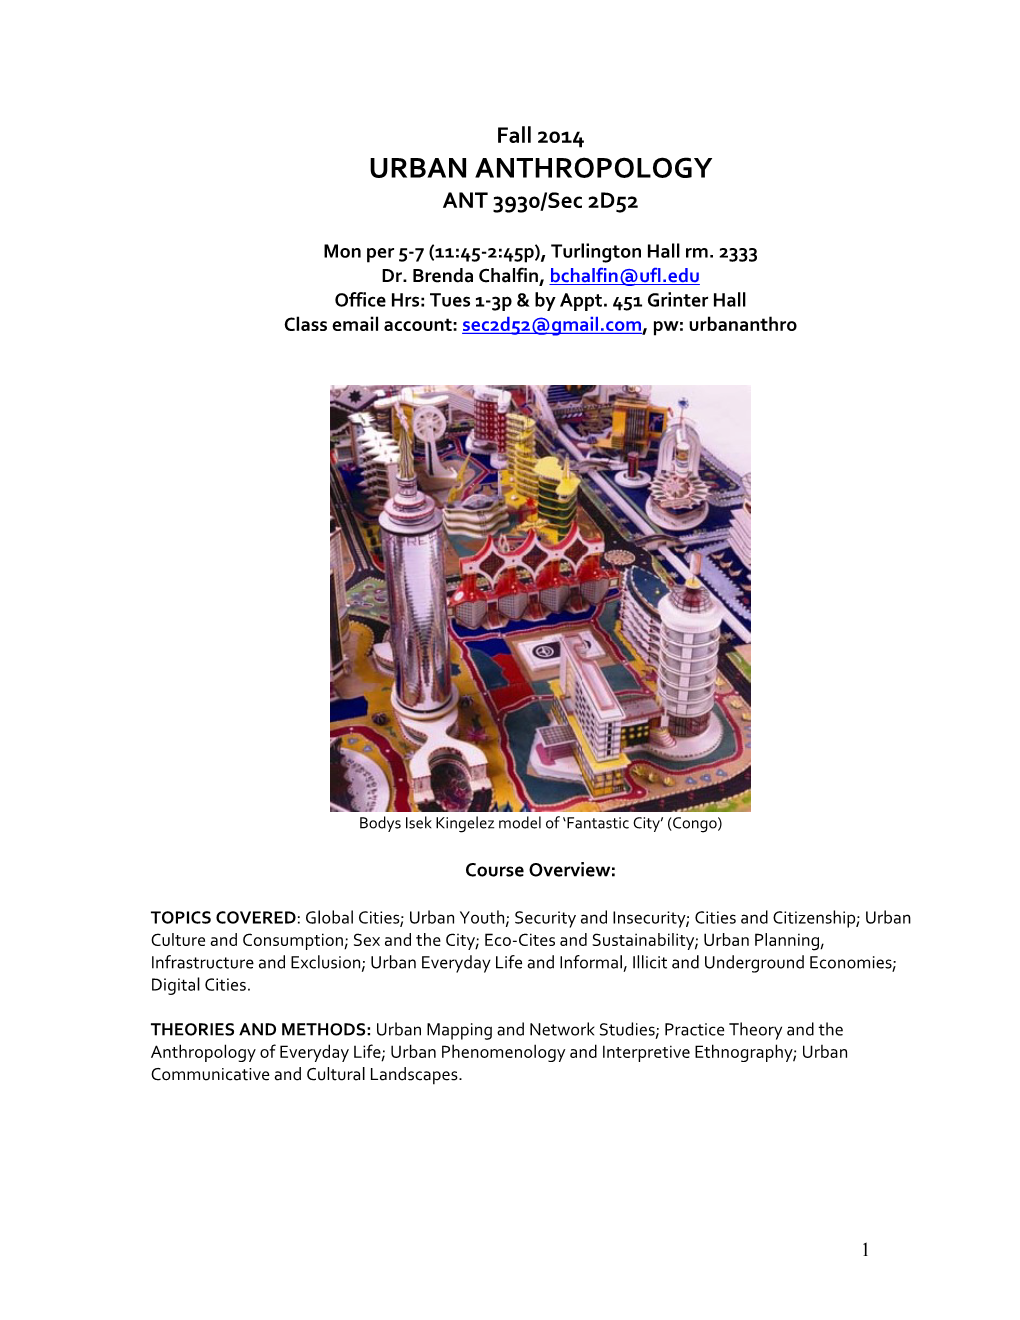 URBAN ANTHROPOLOGY ANT 3930/Sec 2D52